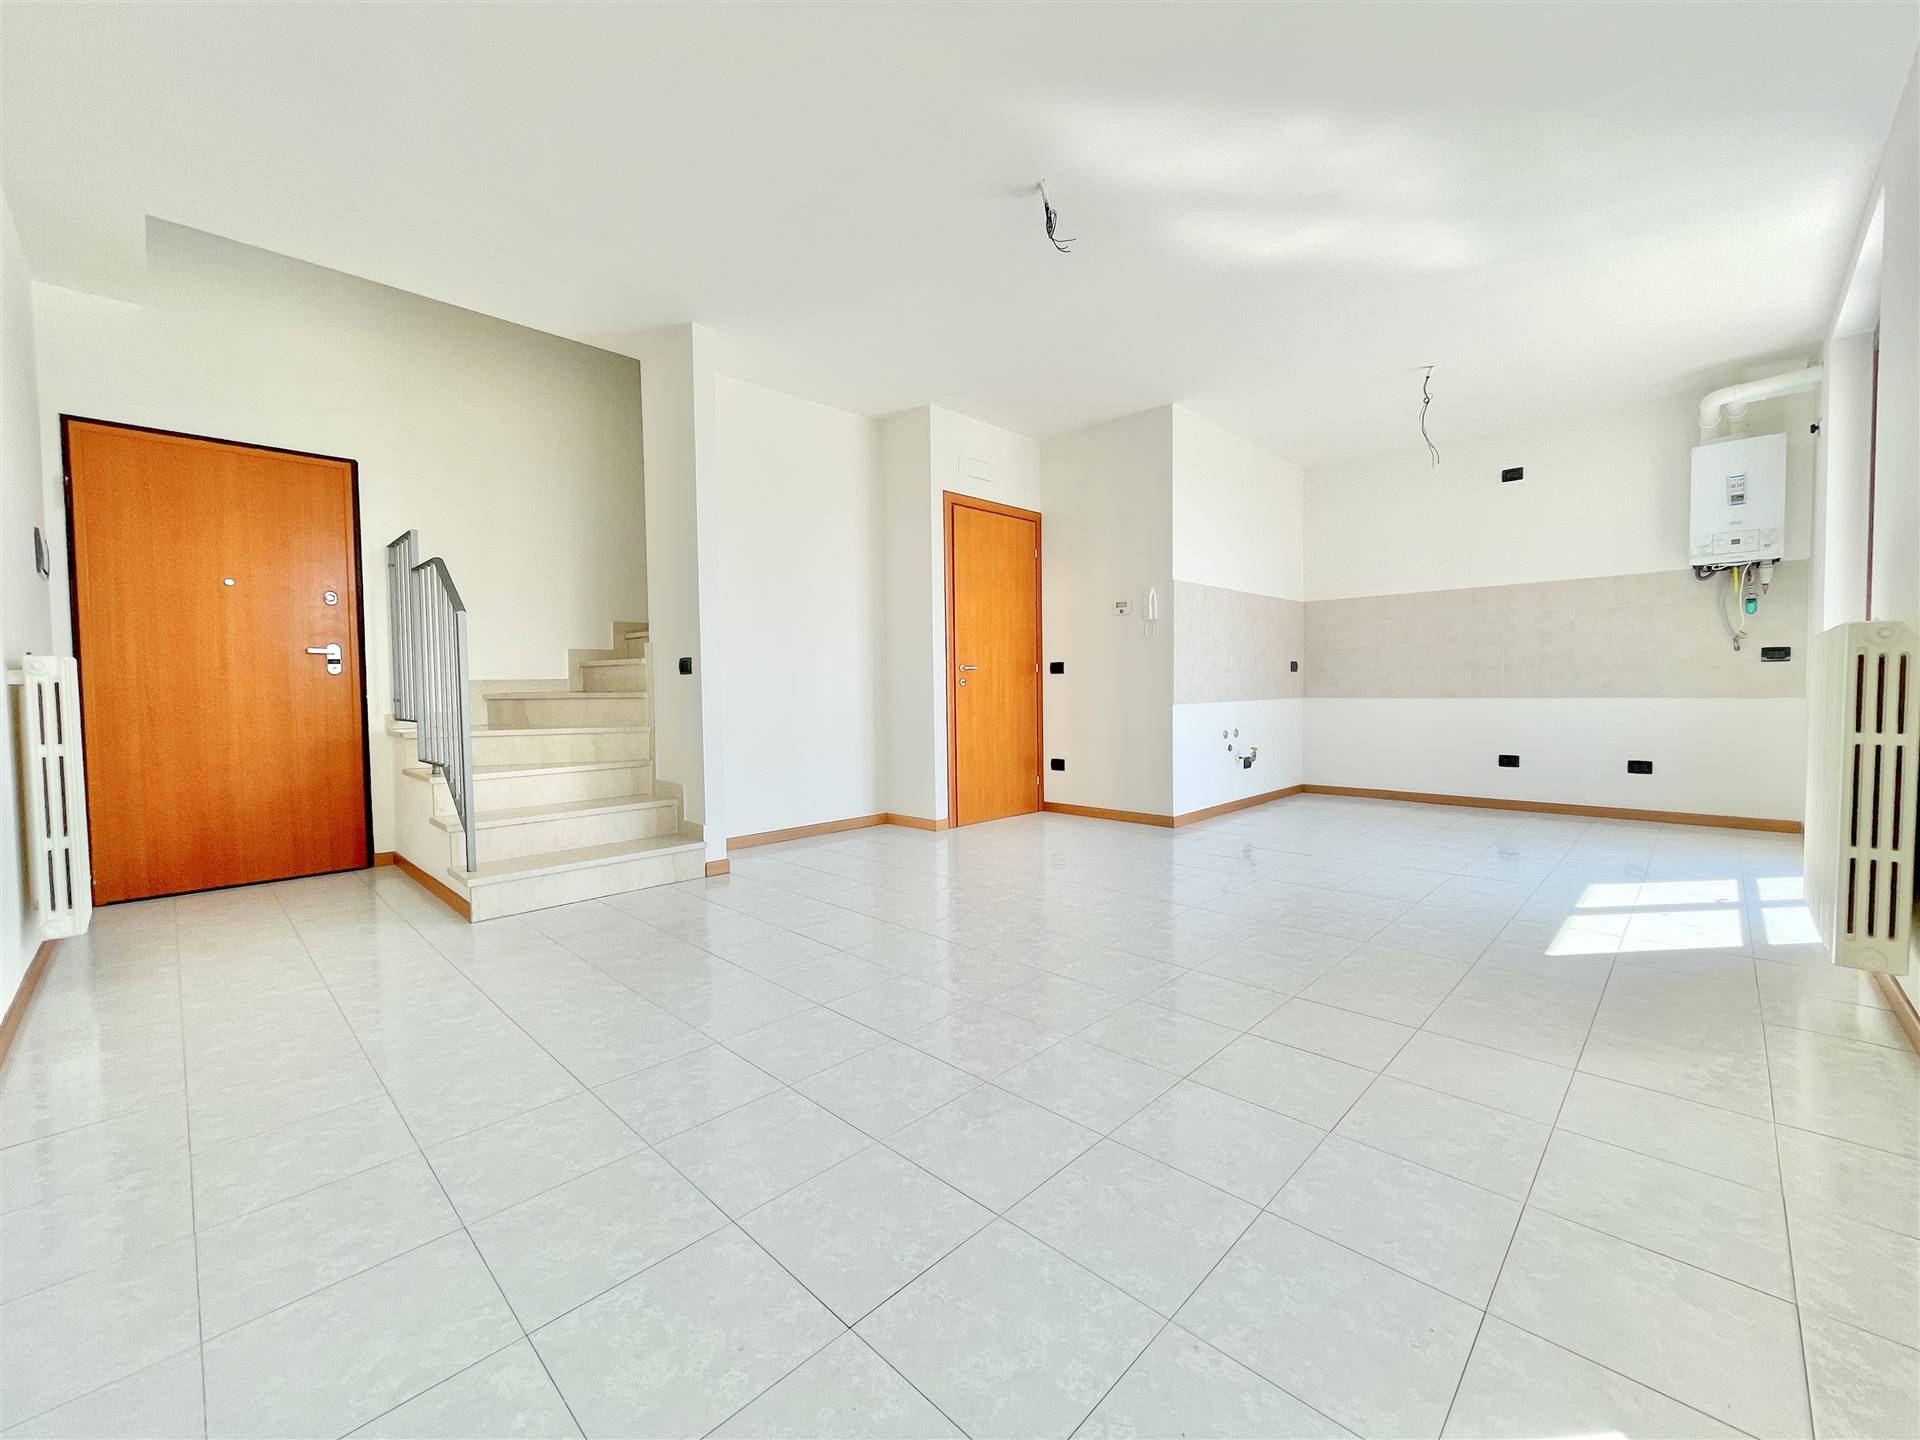 Appartamento in vendita a Bagnolo San Vito, 3 locali, zona Biagio, prezzo € 110.000 | PortaleAgenzieImmobiliari.it